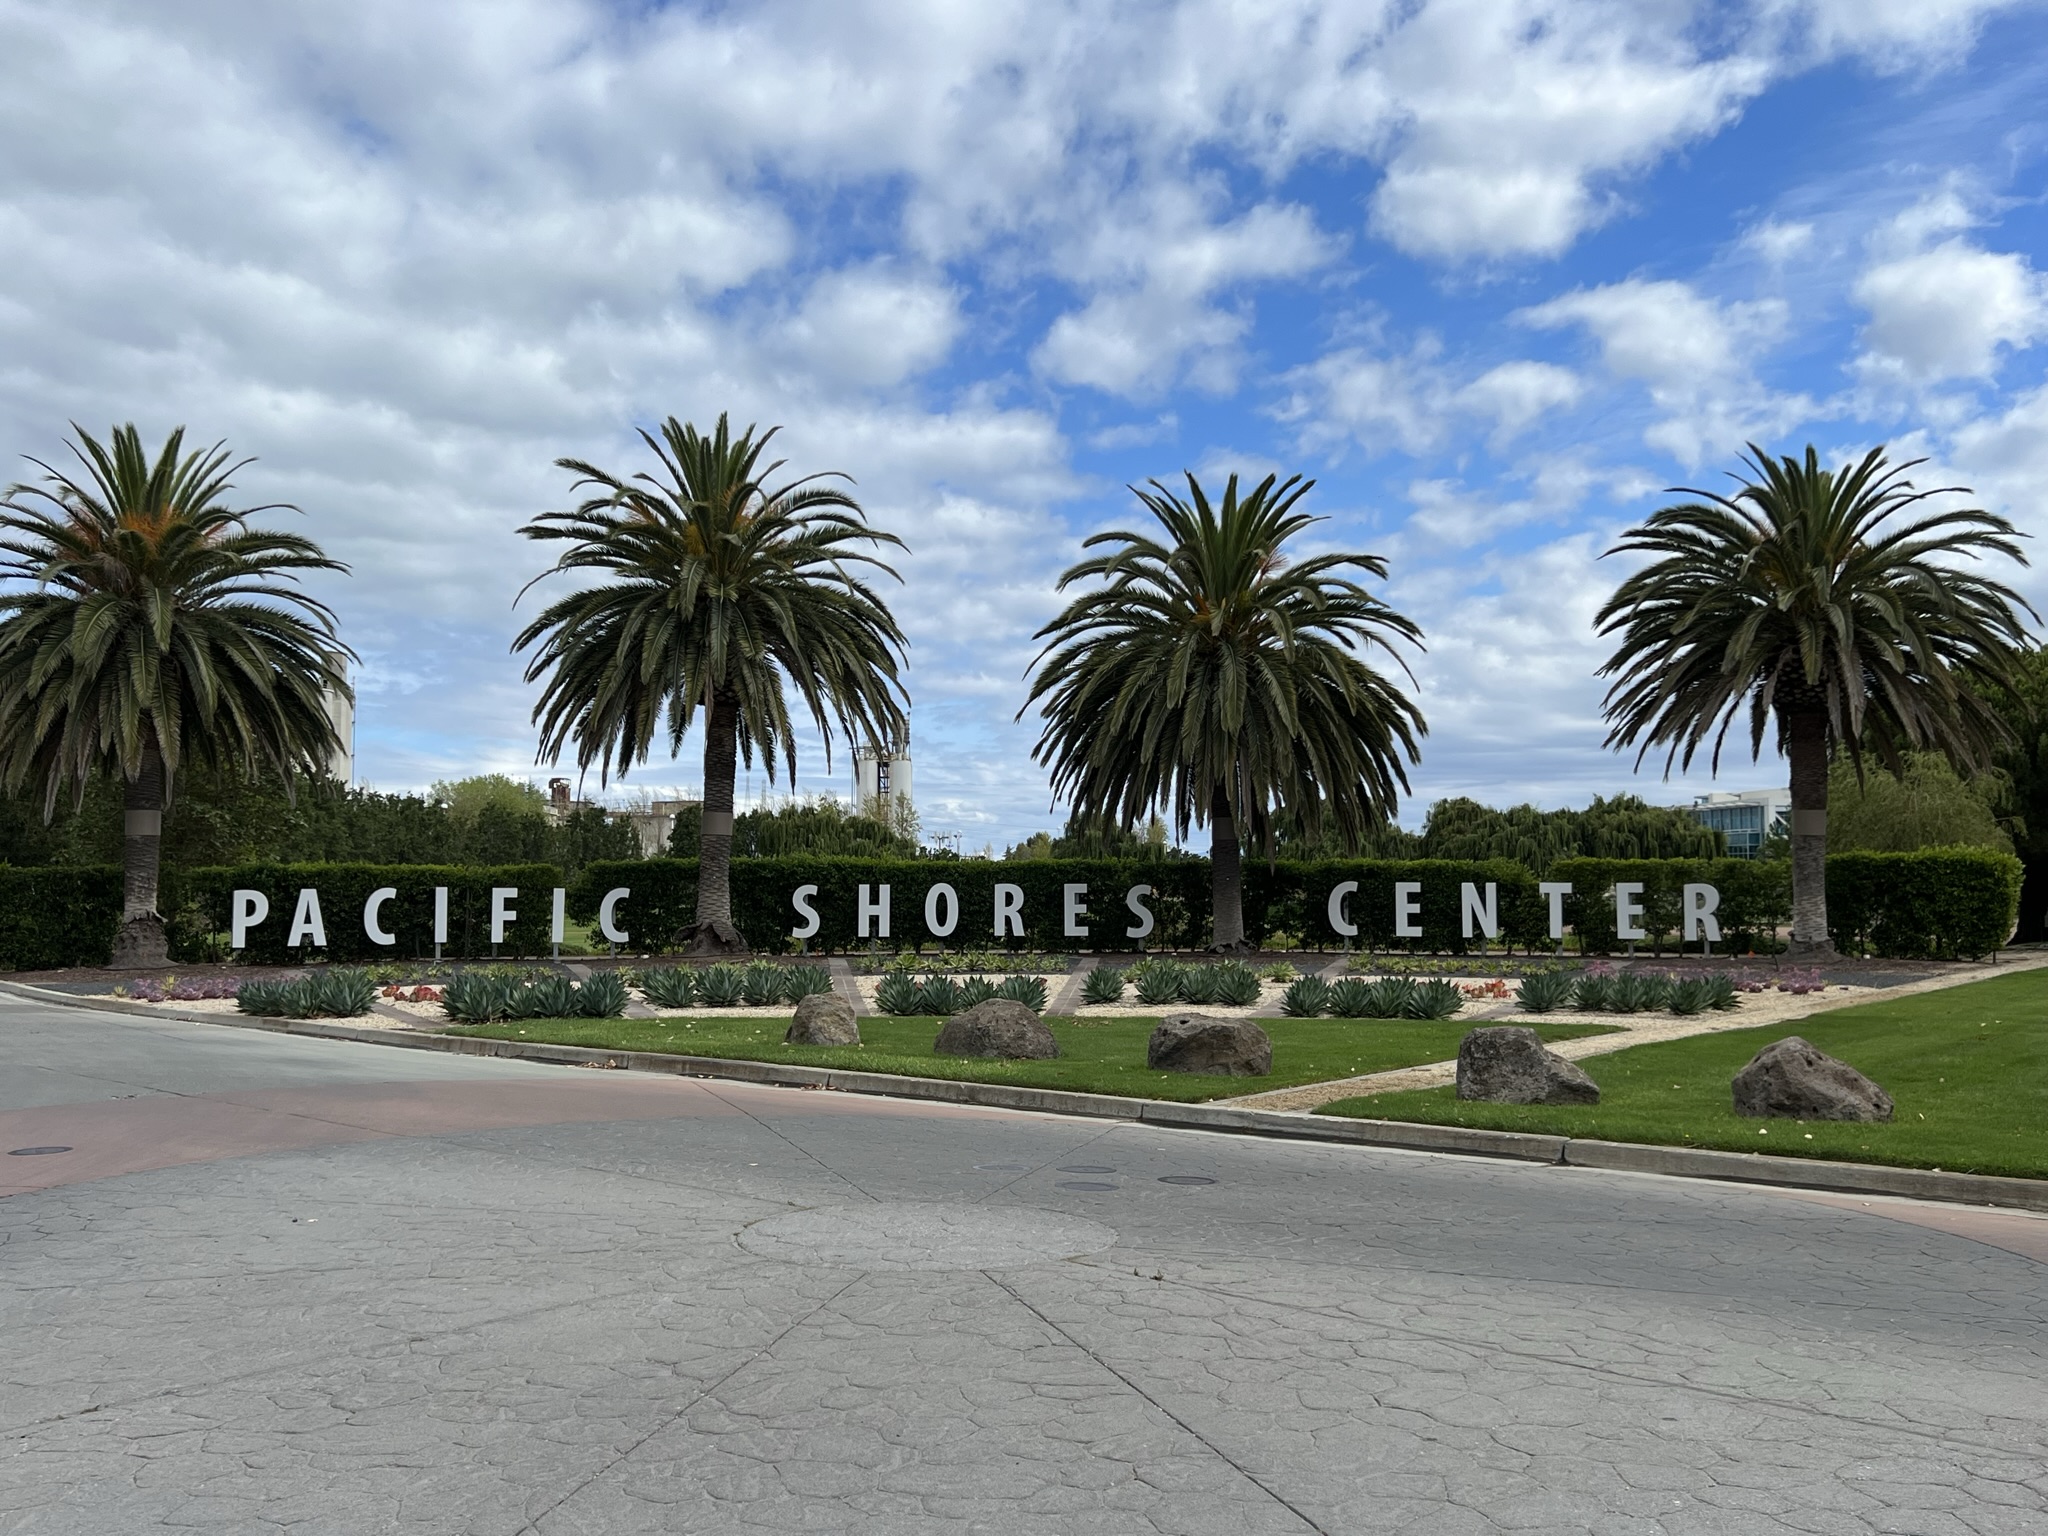 Pacific Shores Center